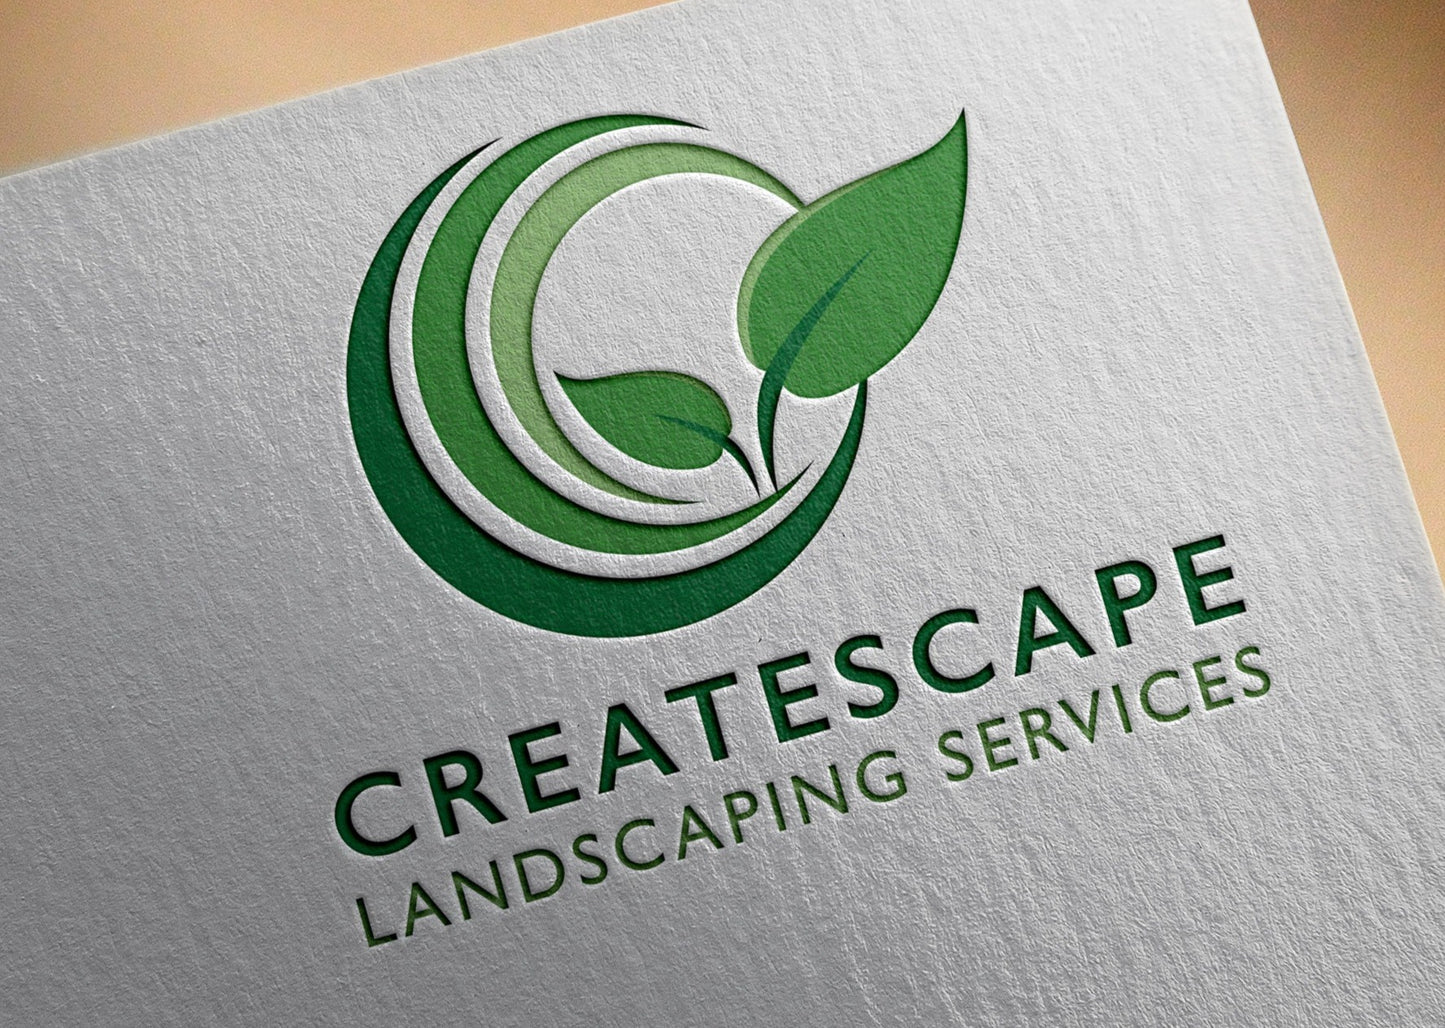 Landscape Logo | Landscaping Logo | Lawn Care Logo | Landscaper Logo | Professional Logo Design | Lawn Maintenance | Leaf Logo